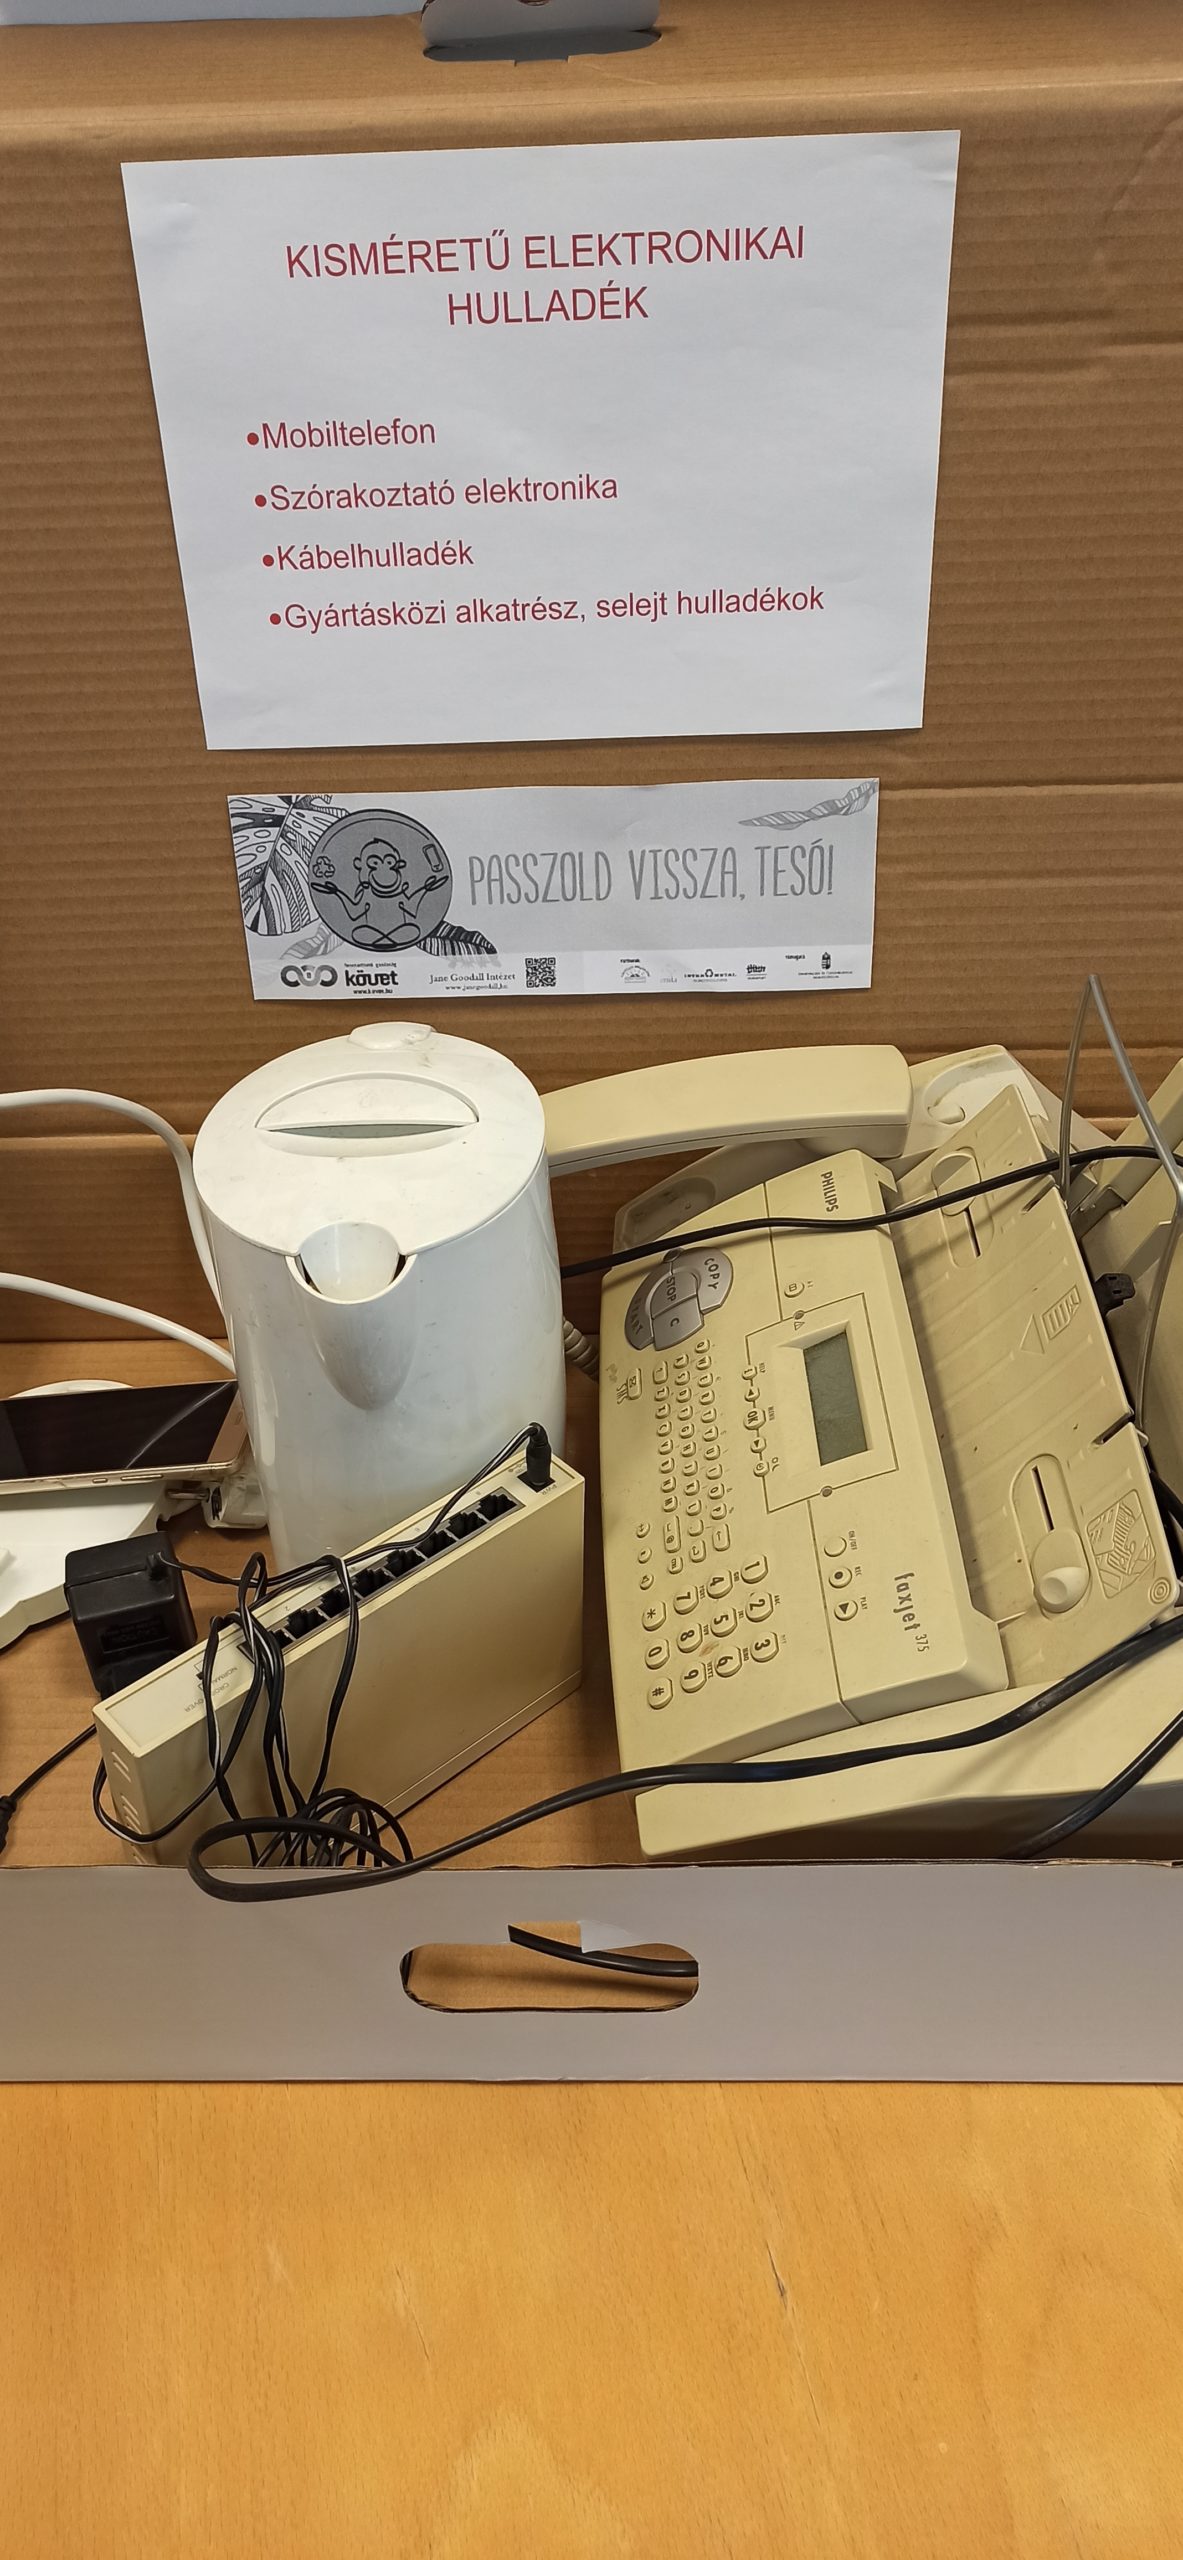 Mobiltelefon, töltő, router, vízforraló, sőt még egy régi fax gép is belekerült az elektronikai hulladékgyűjtőbe